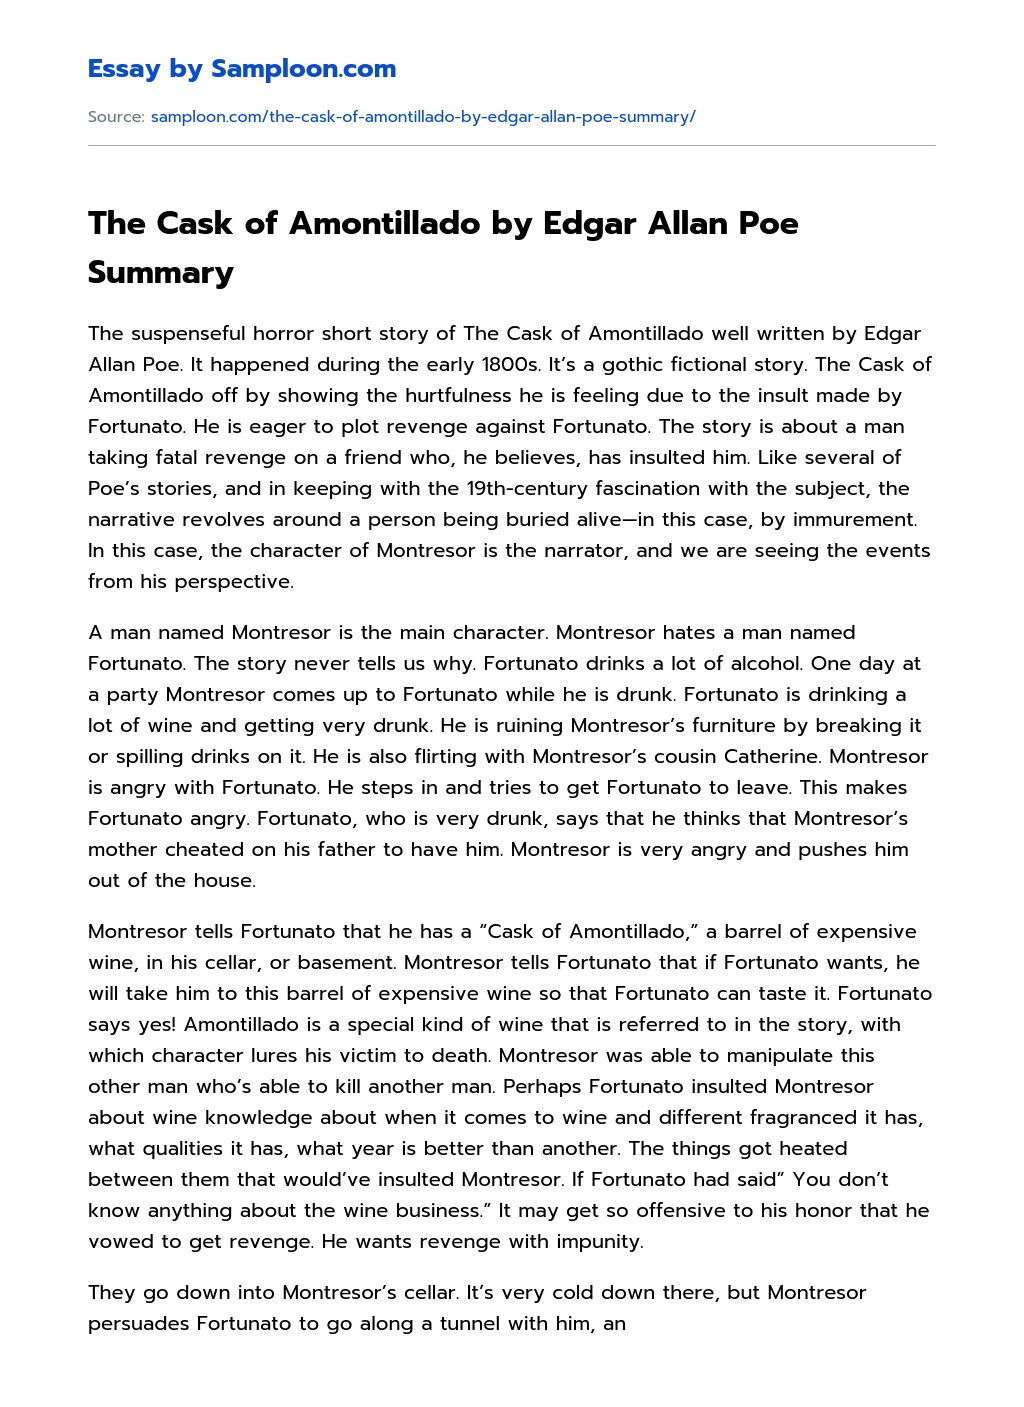 The Cask of Amontillado by Edgar Allan Poe Summary essay